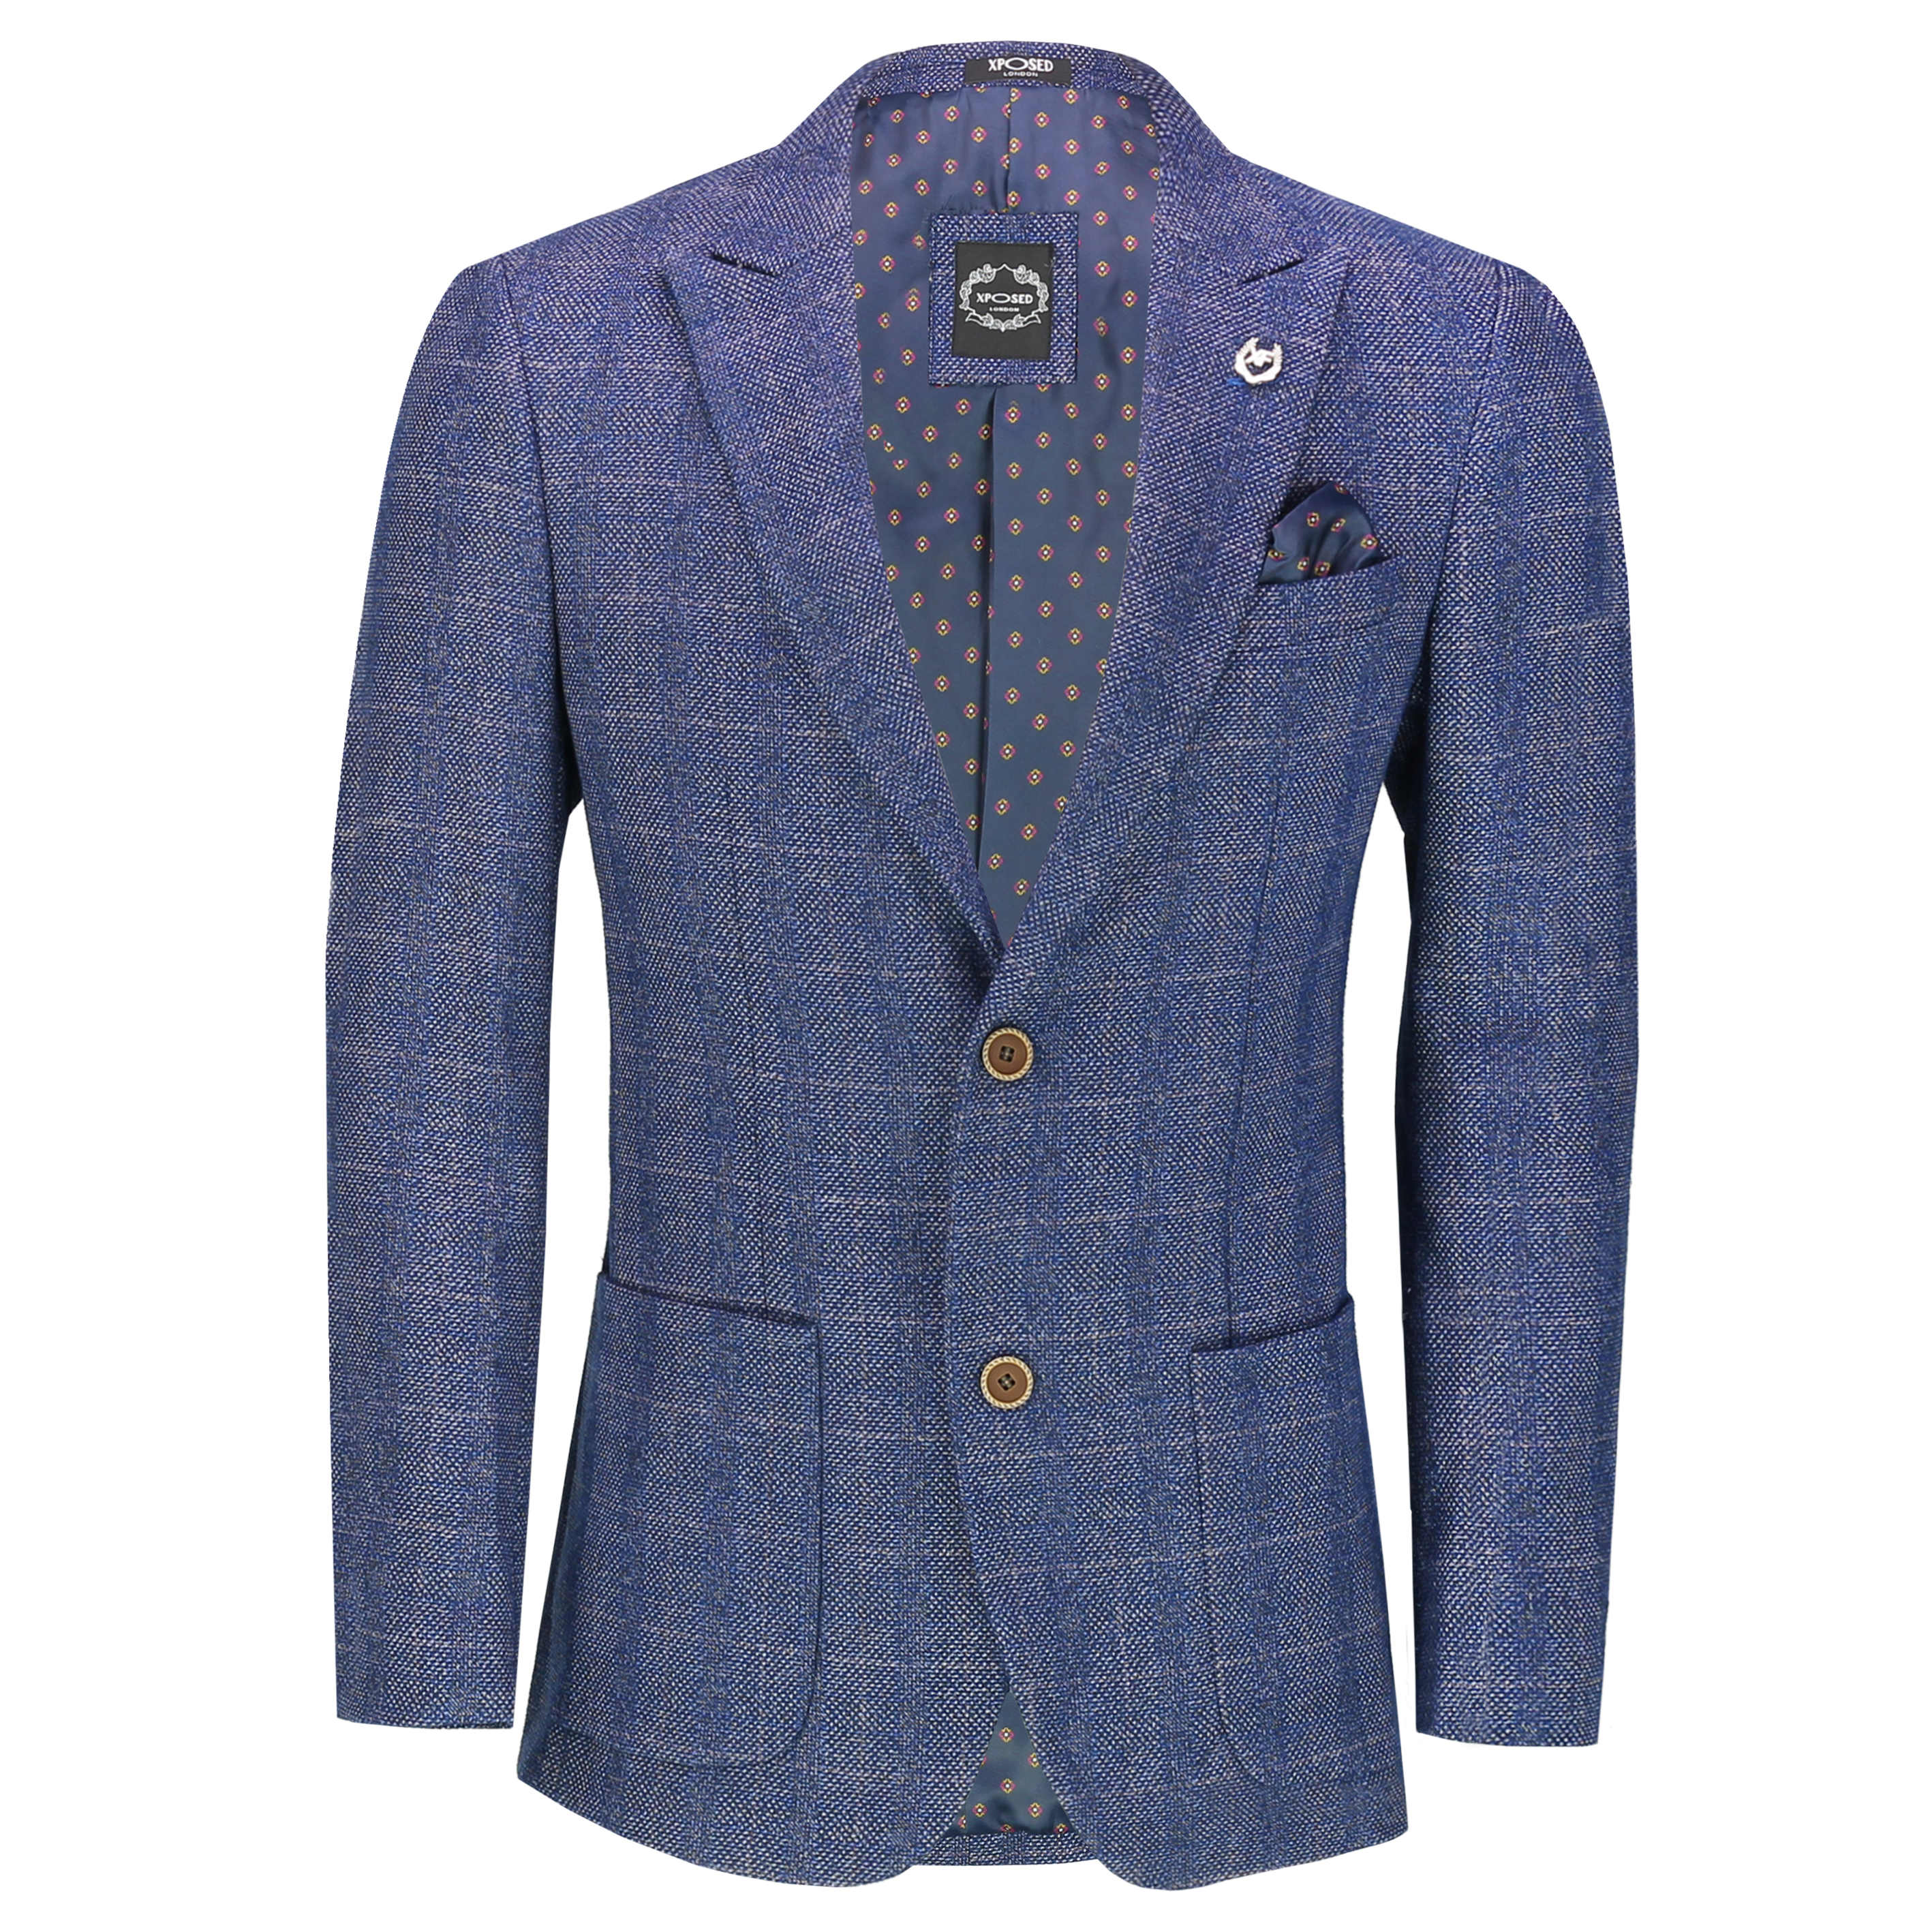 Blue Tweed Check Jacket